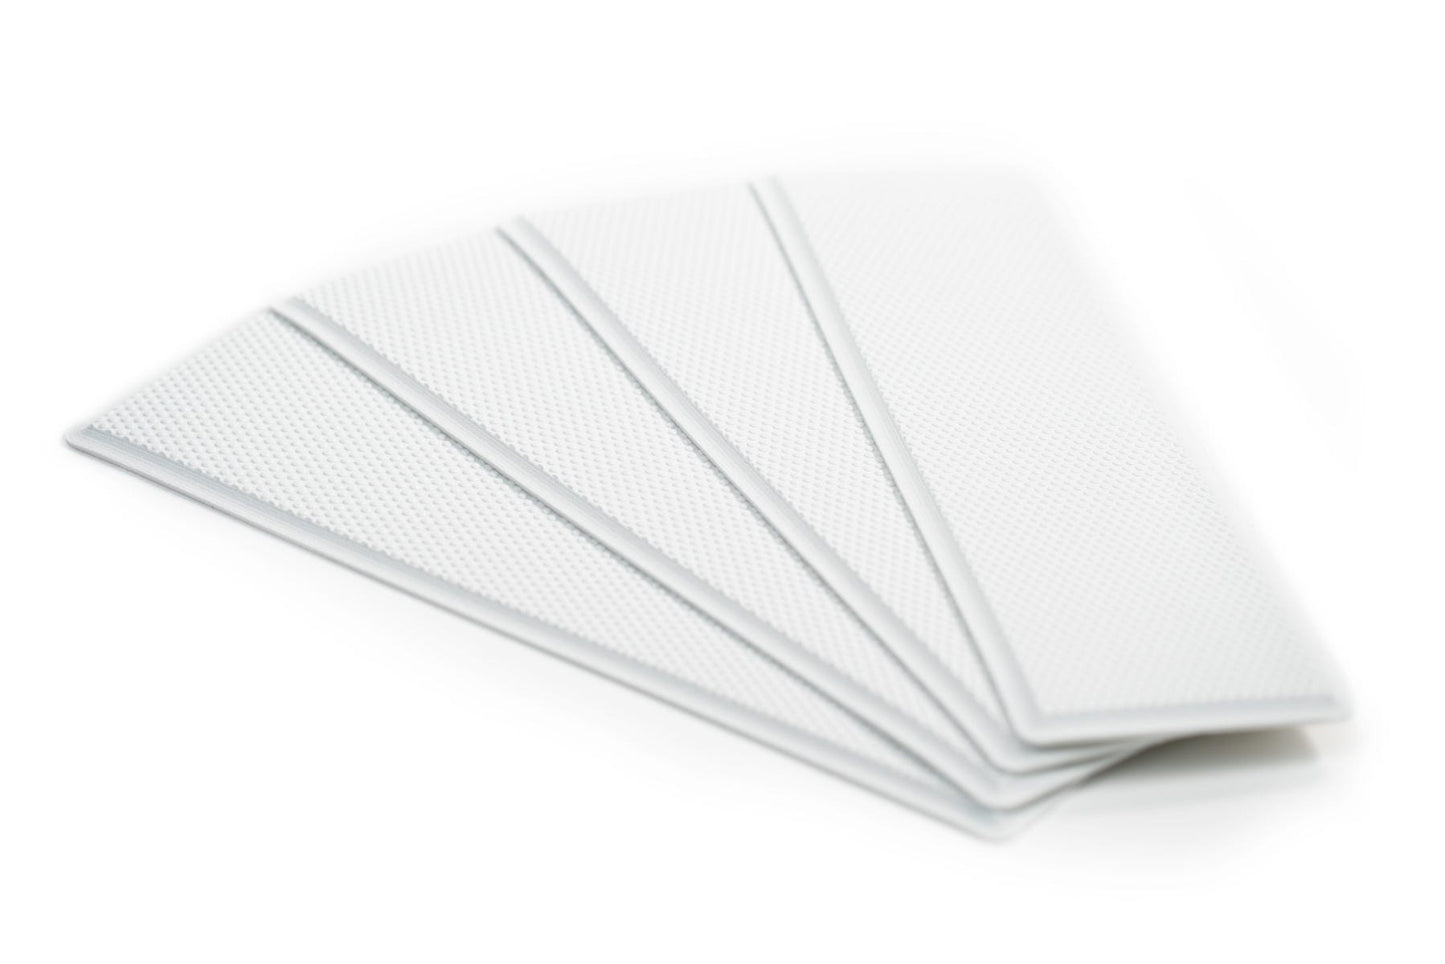 Self adhesive deck grip step pad